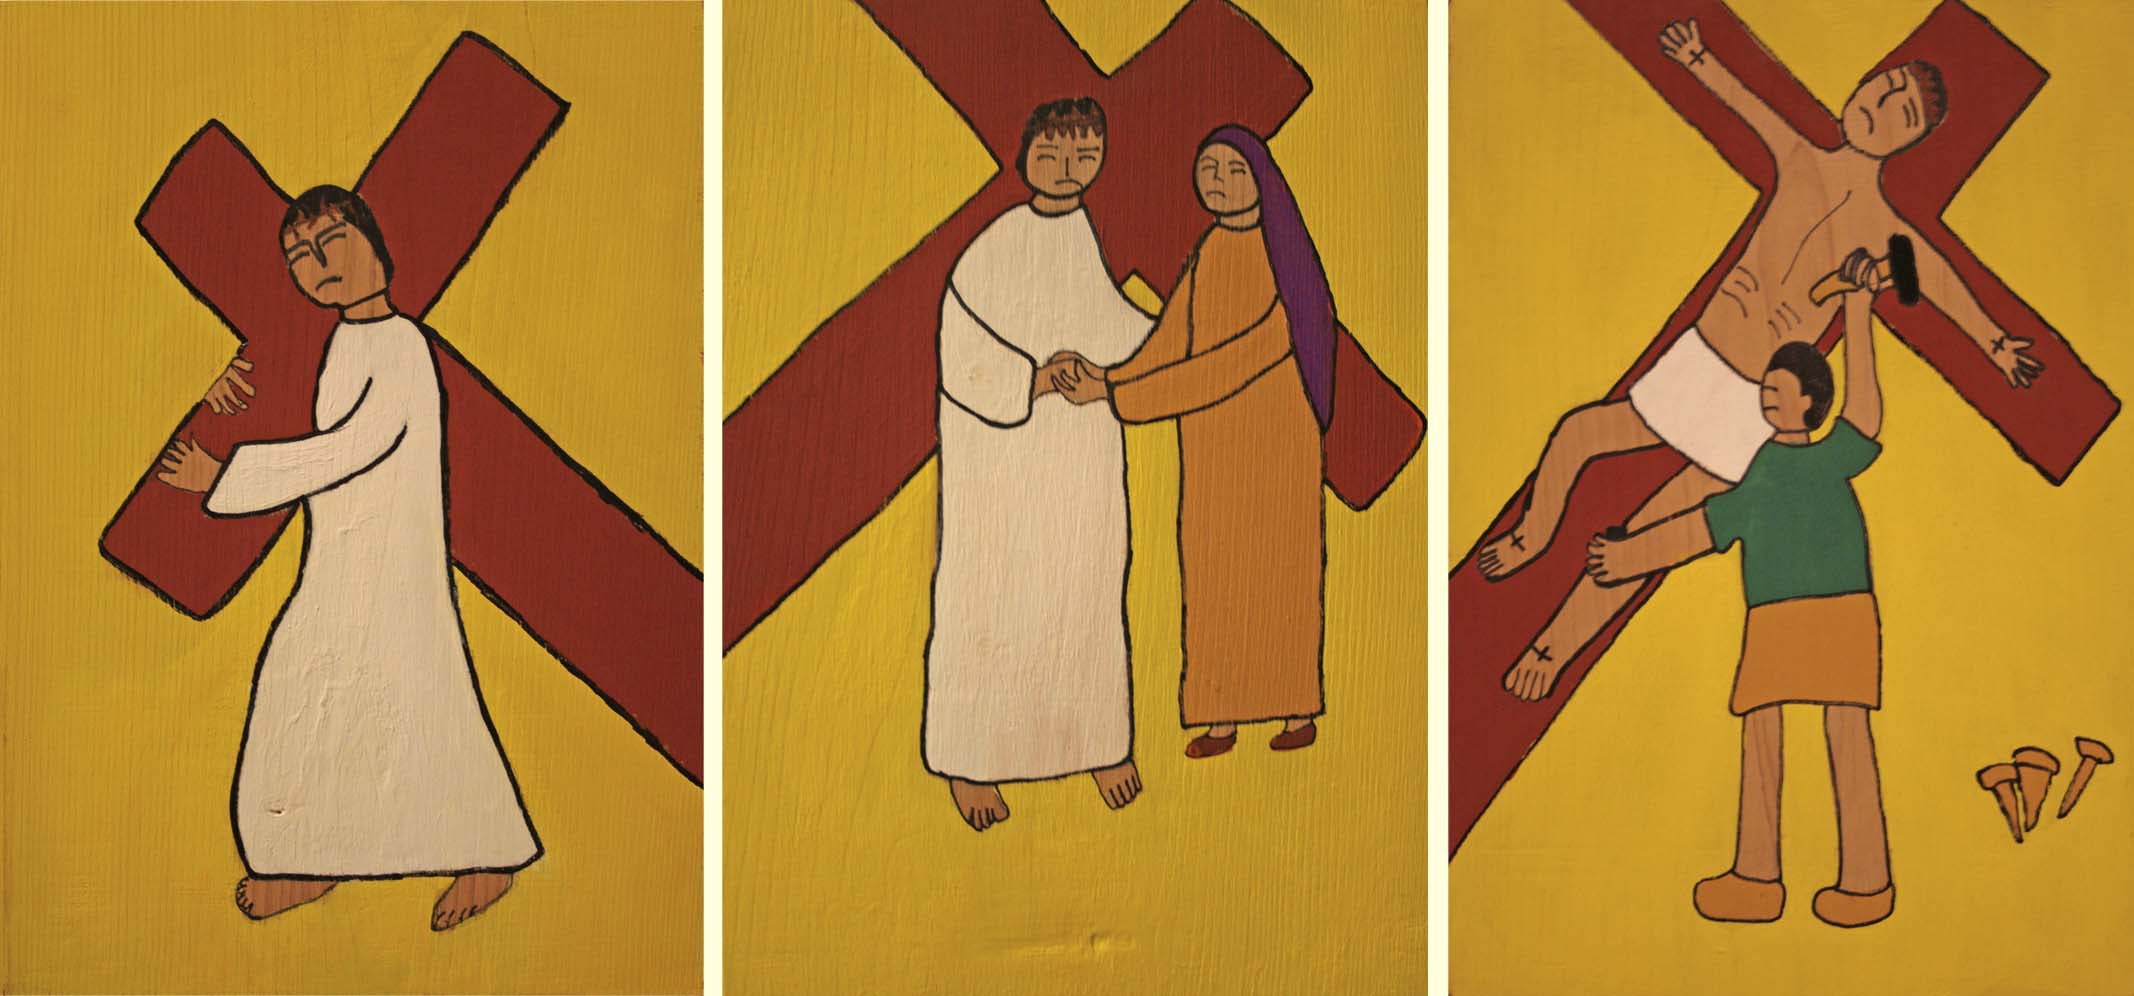 ラルシュ・カナの家若松政二さん作十字架の道行板絵2留、4留、11留の写真。聖マーガレット教会礼拝堂壁に掛けられている。